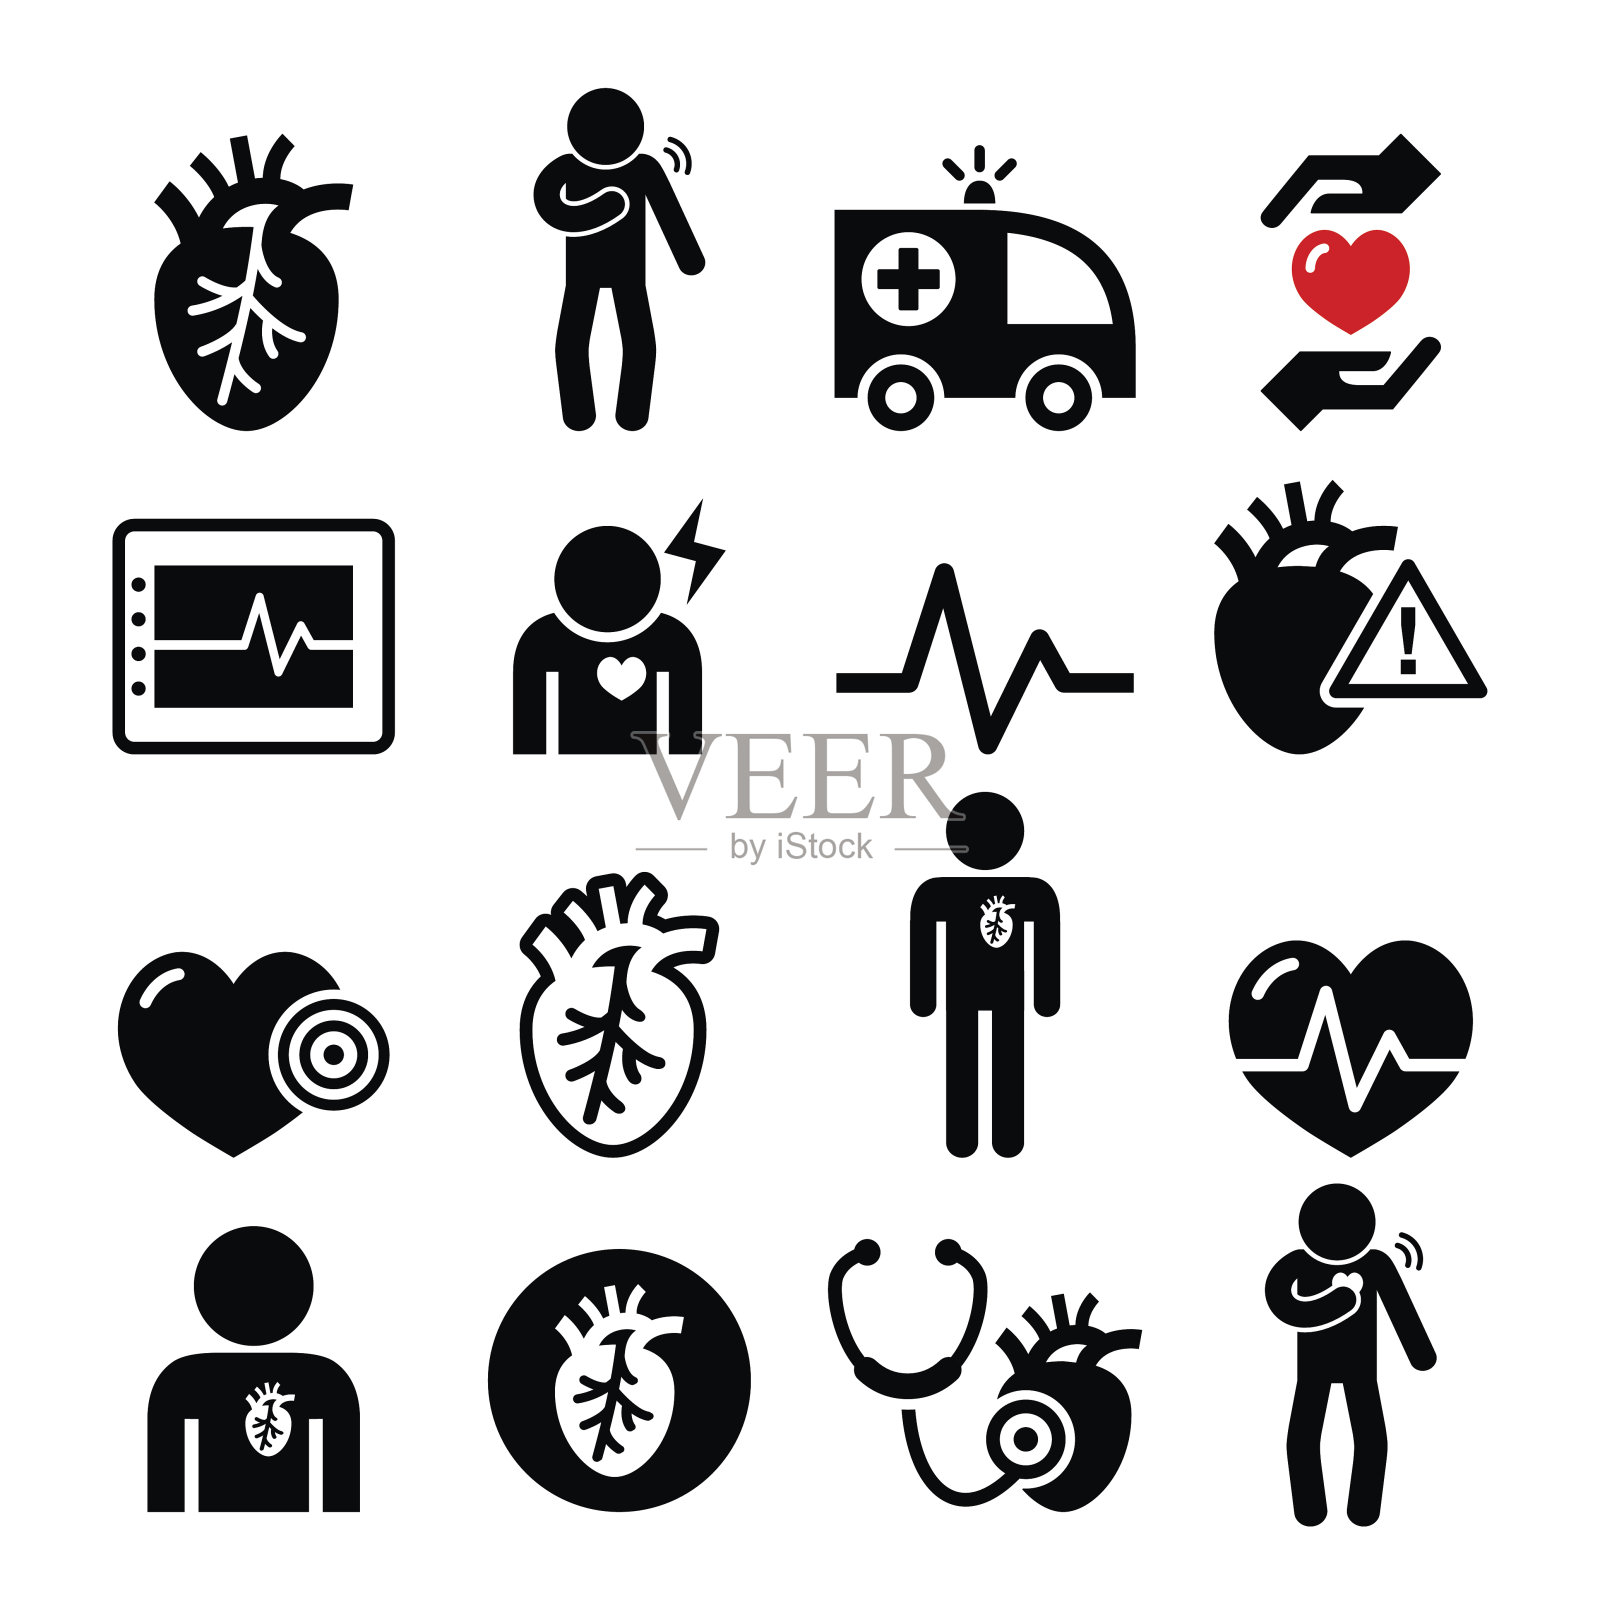 心脏病，心脏病发作，心血管疾病图标设置图标素材